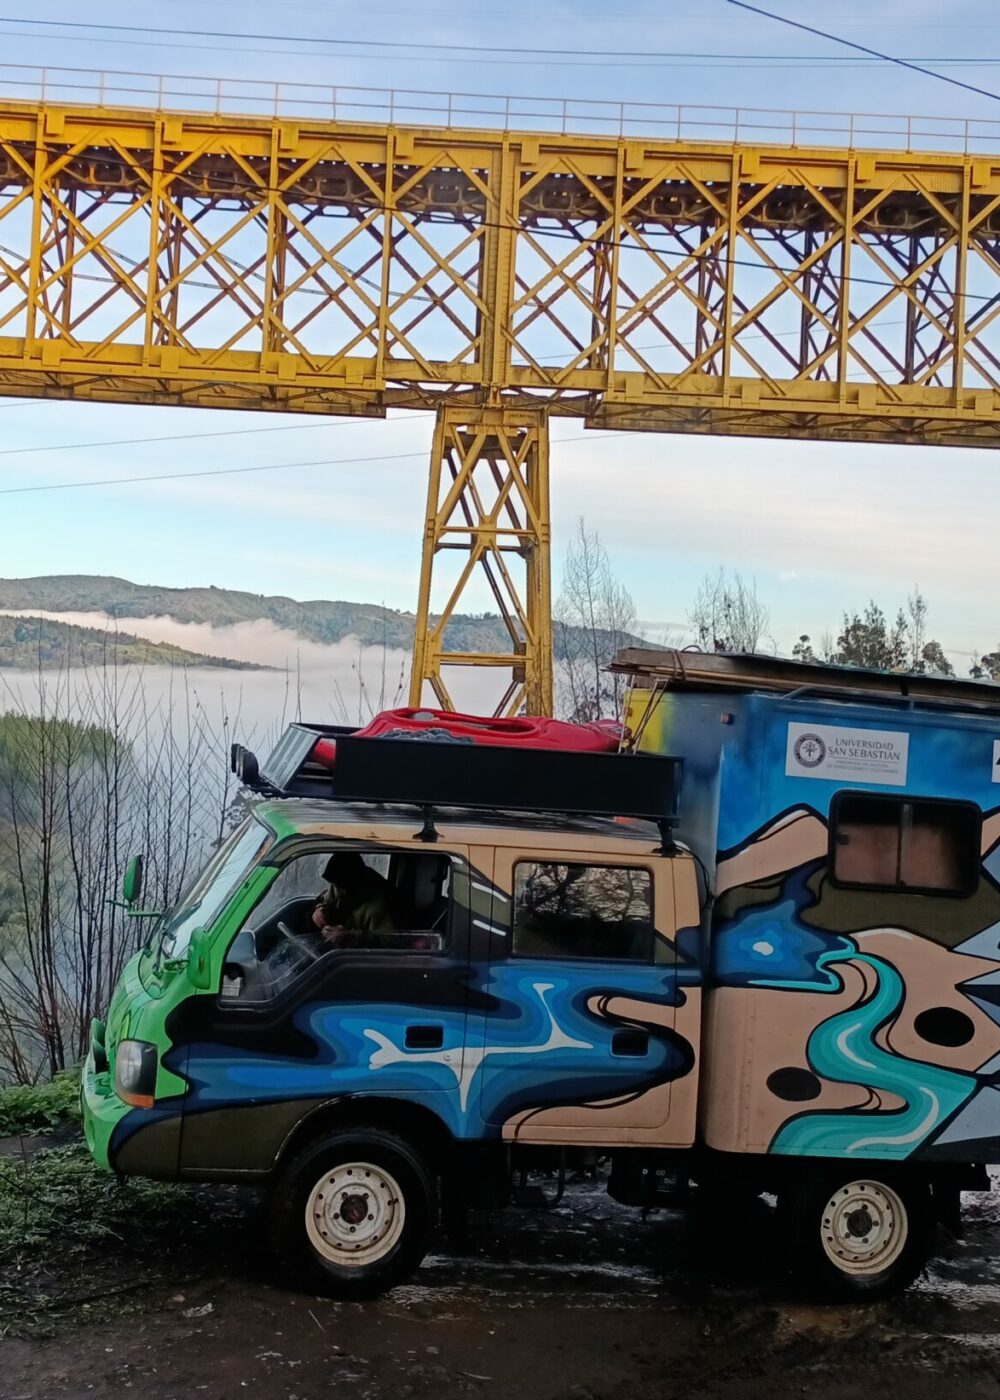 La historia de Educamper, el innovador auto que funciona con aceite y viaja por Chile educando sobre reciclaje